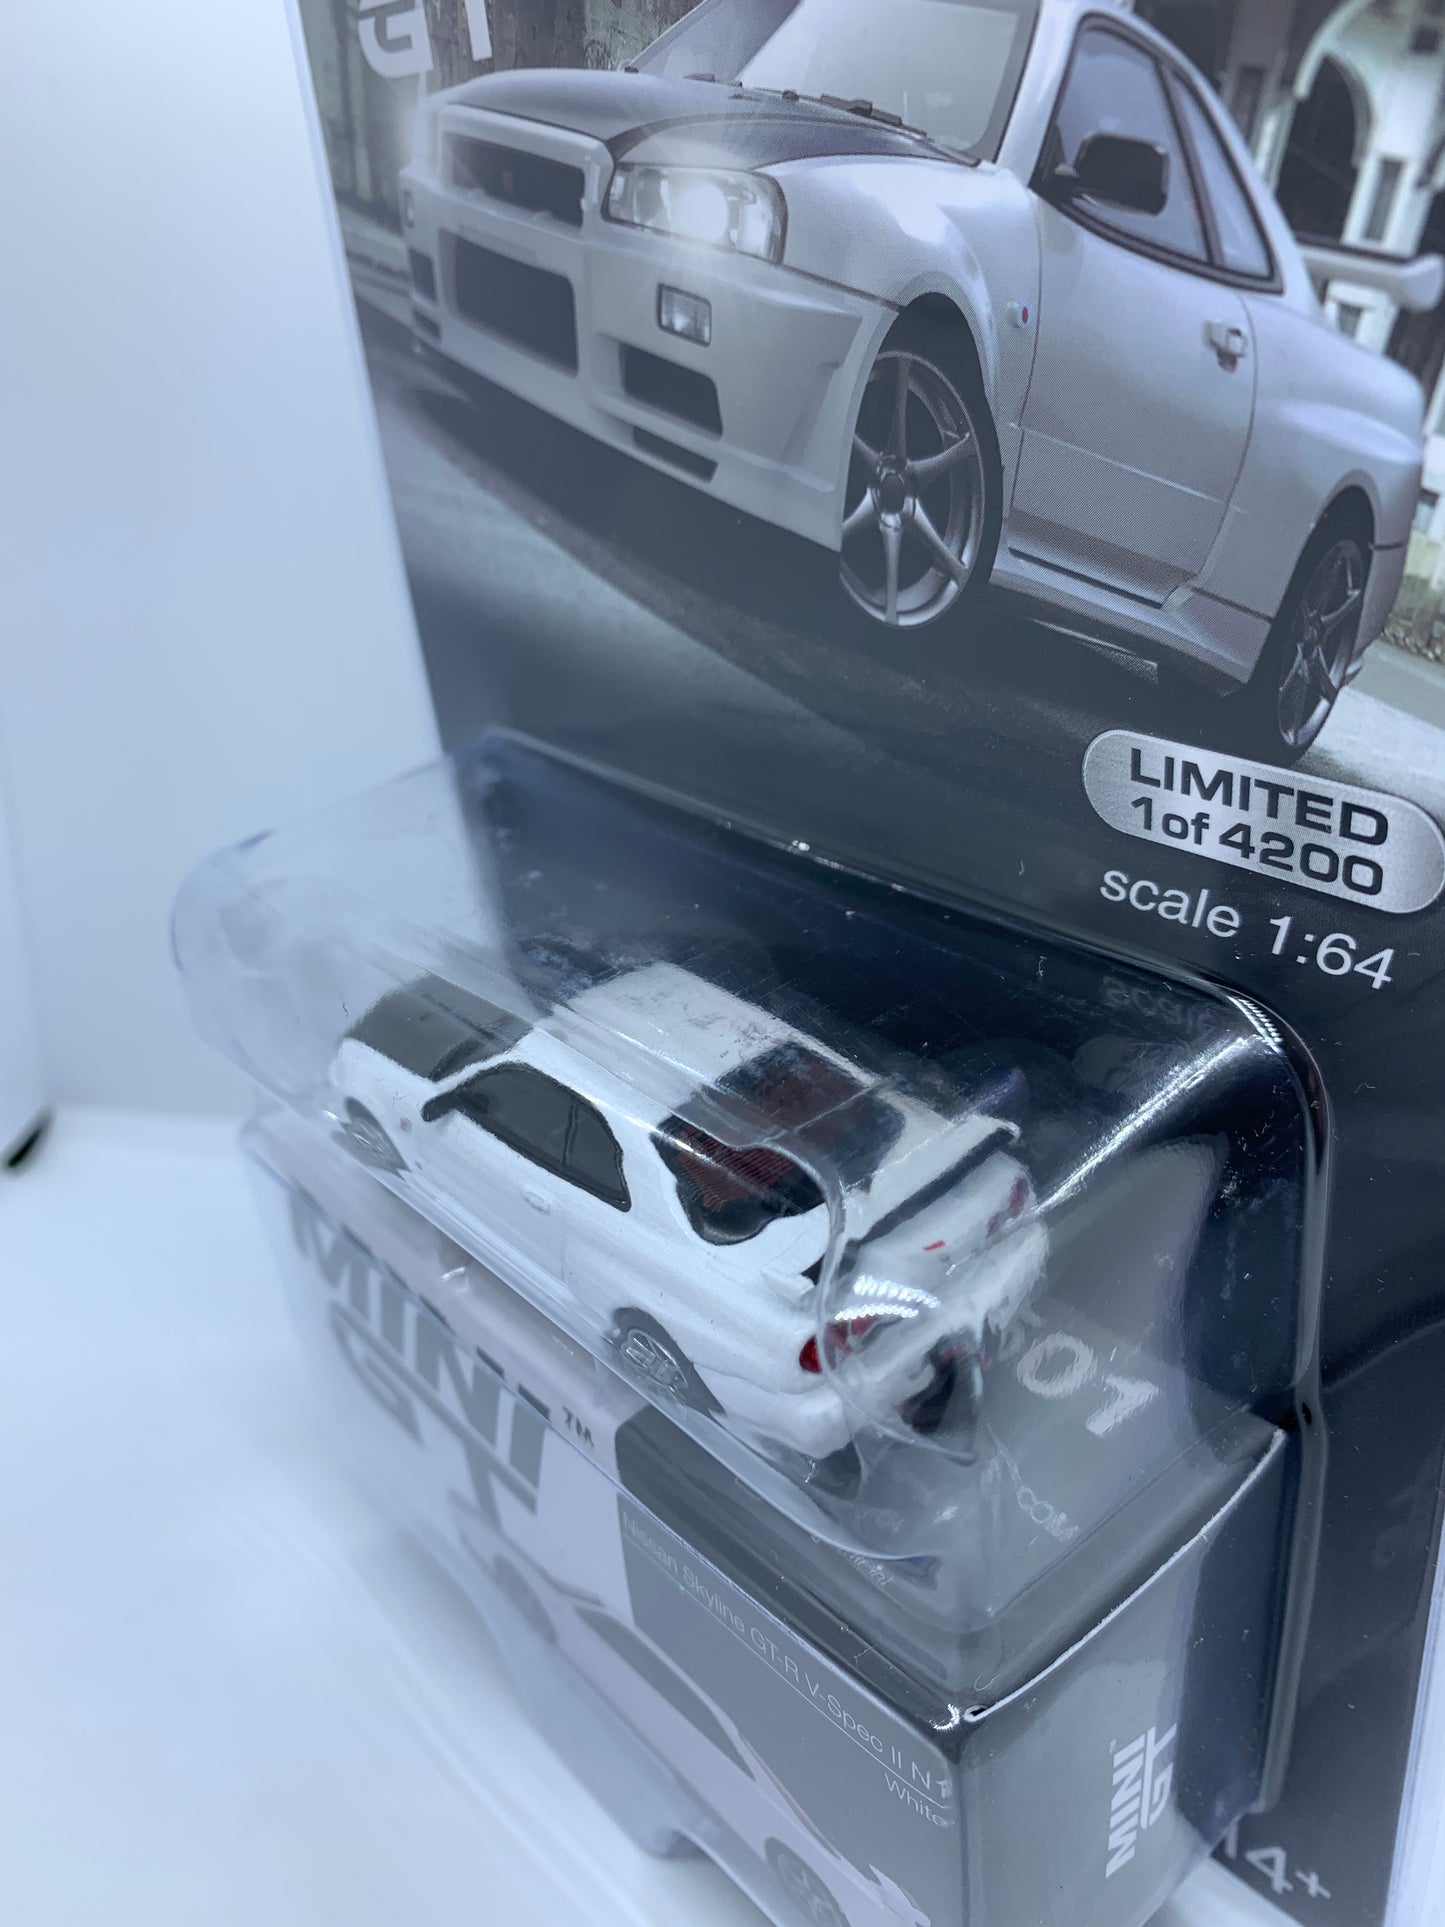 MINI GT - Nissan Skyline R34 GT-R V-Spec II N1 White - Display Blister Packaging